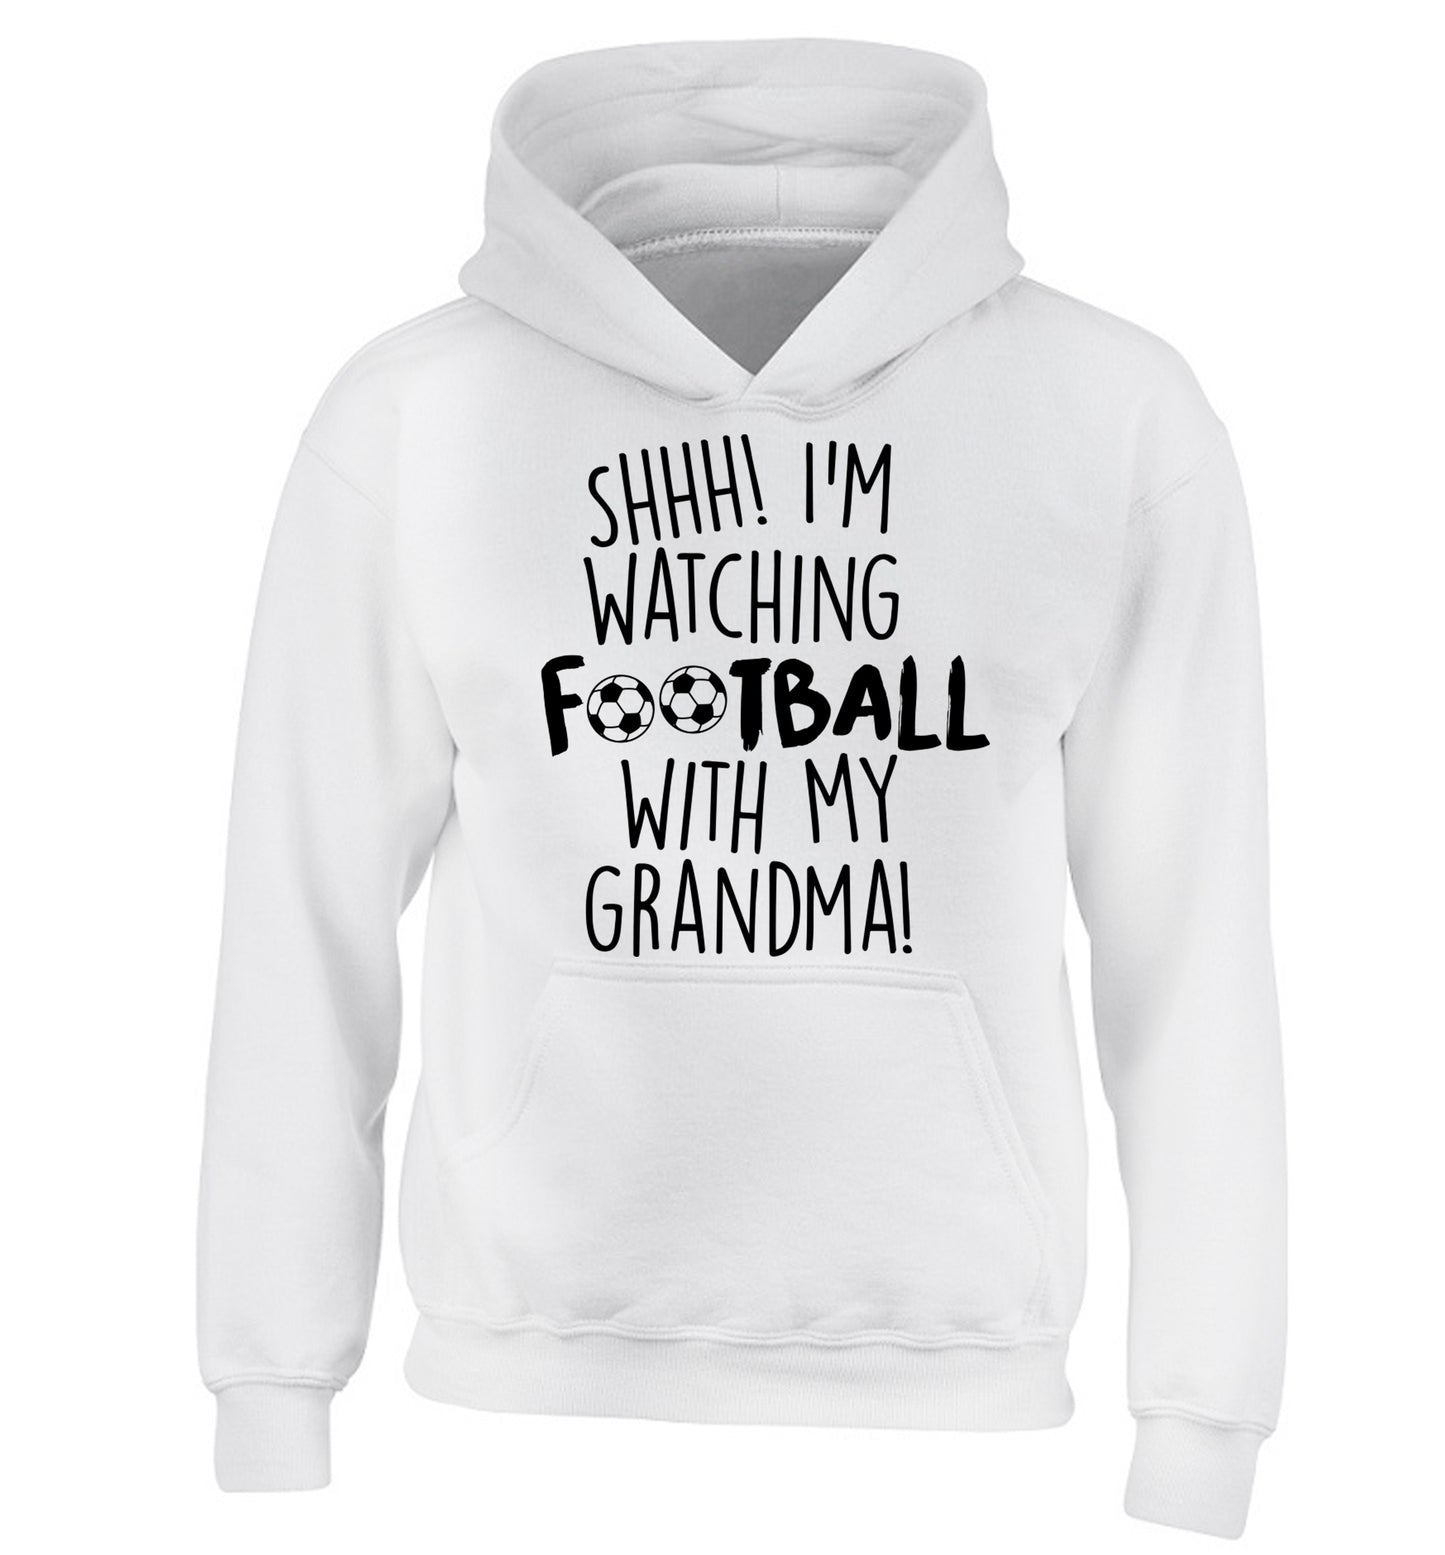 Shhh I'm watching football with my grandma children's white hoodie 12-14 Years